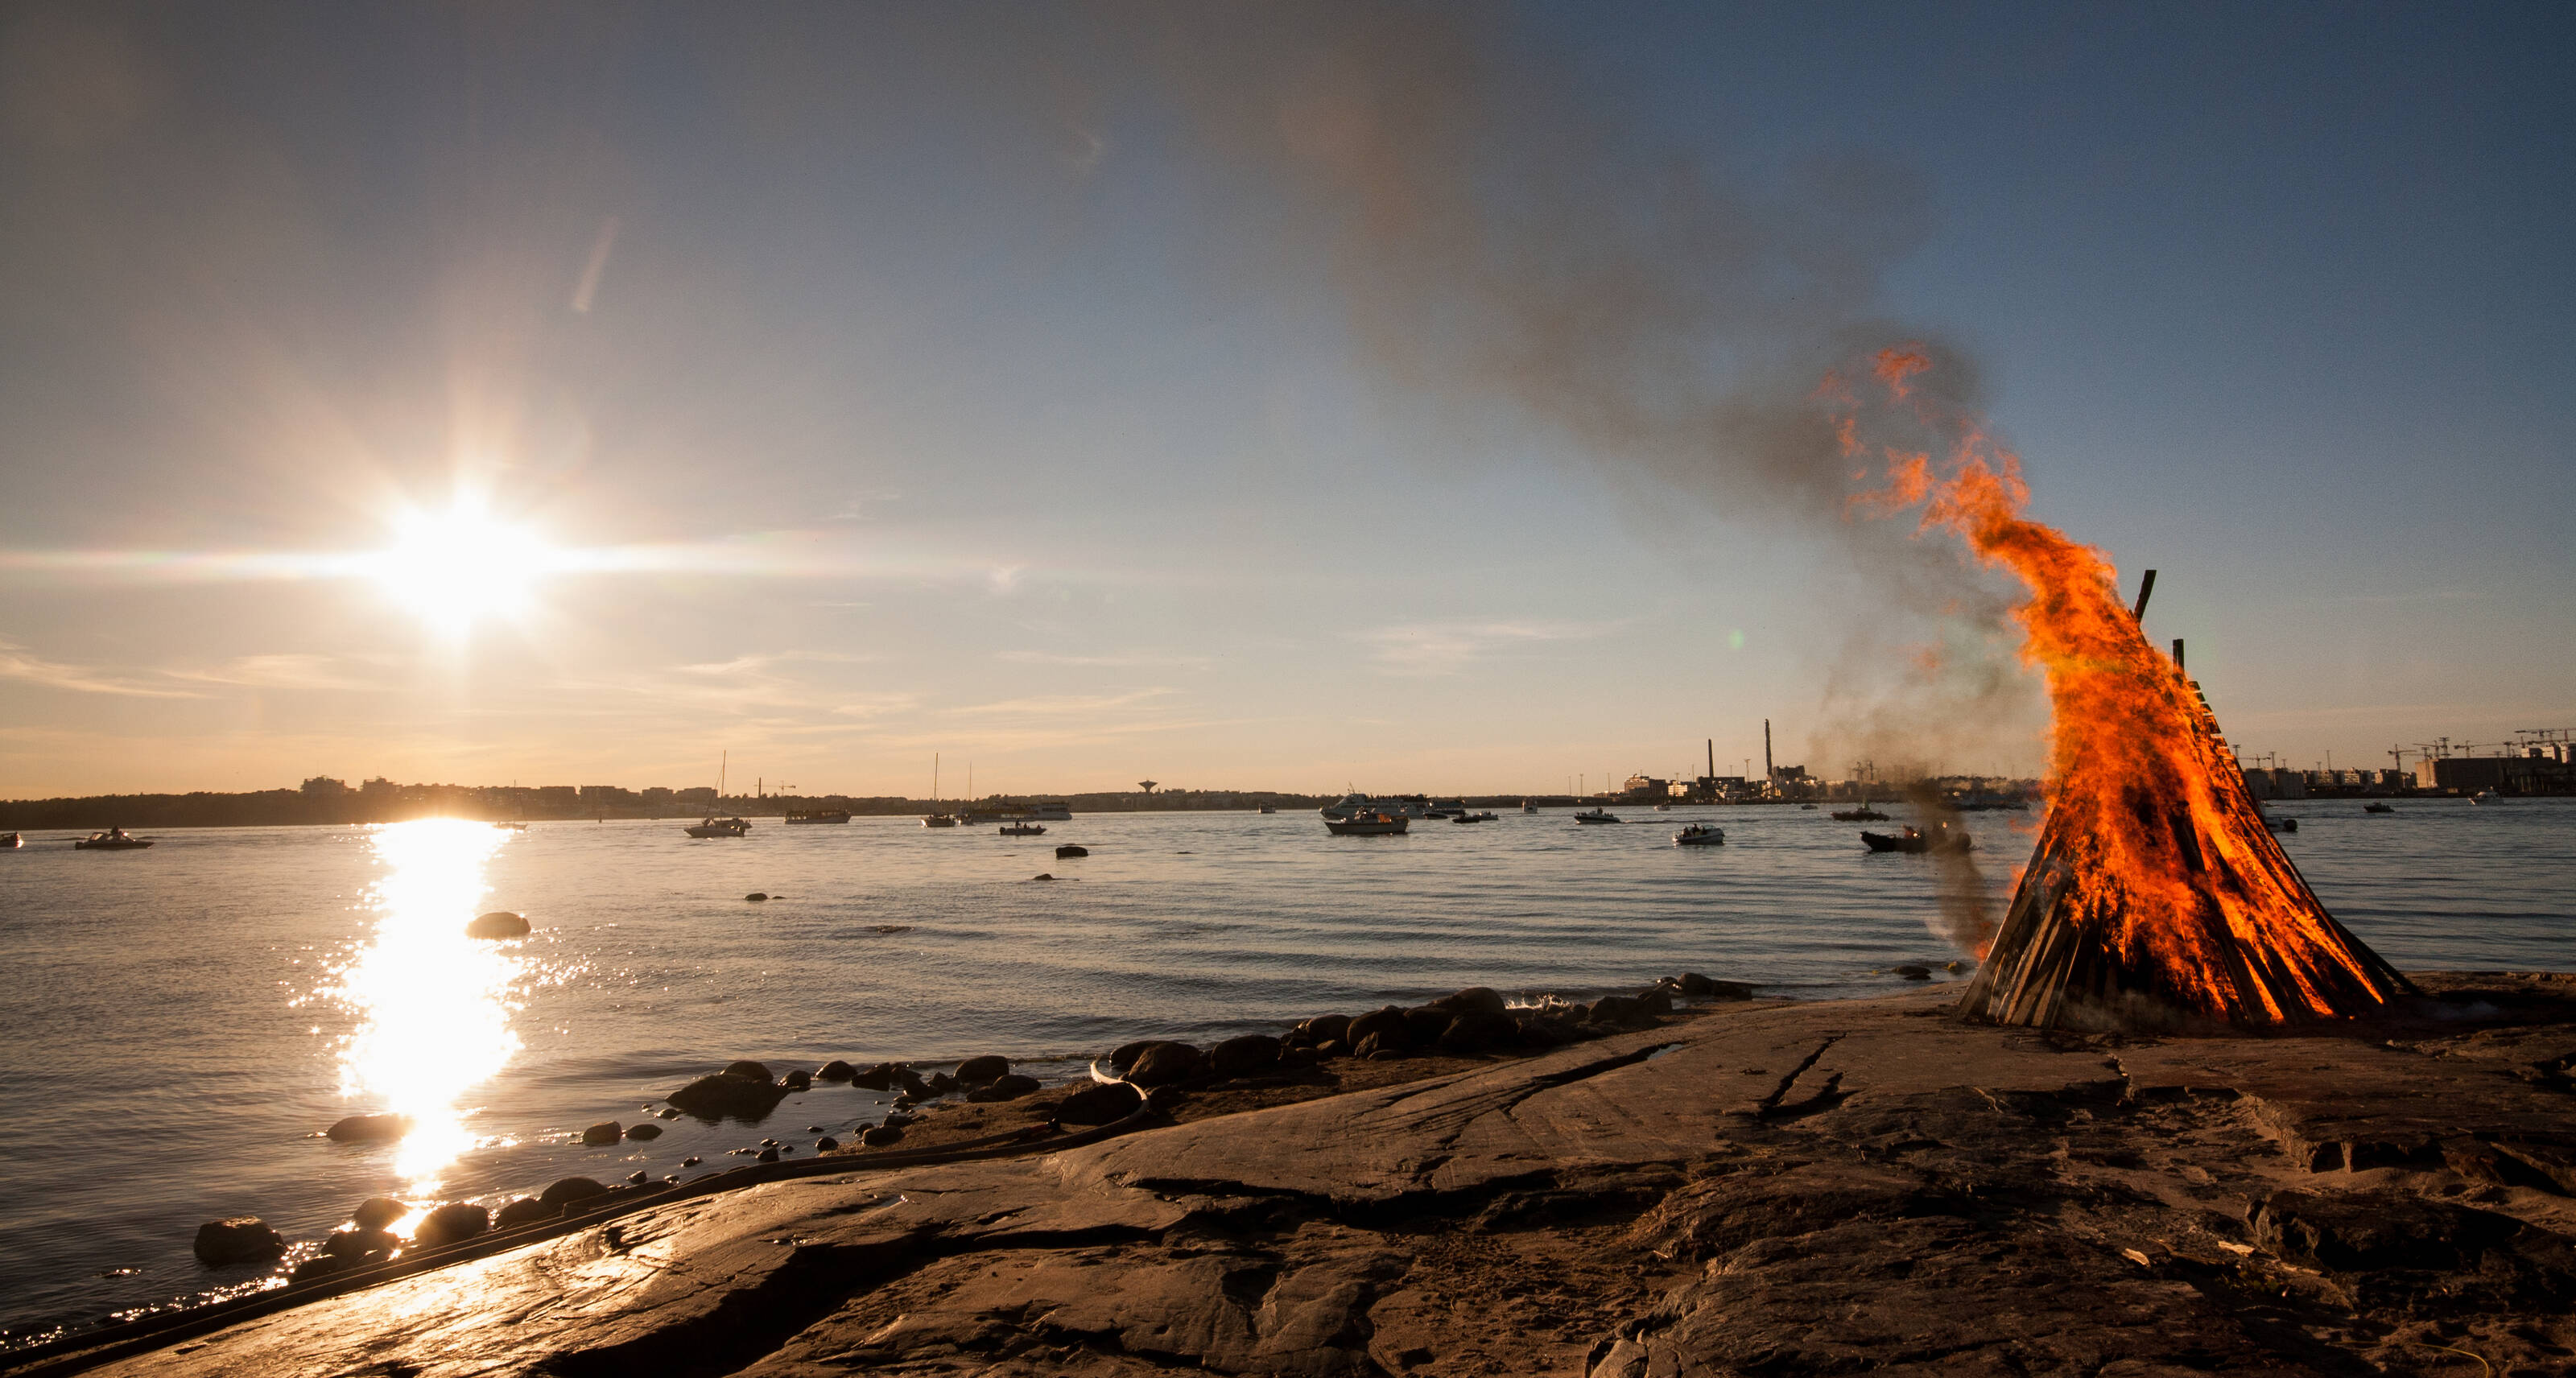 Mittsommerfeuer auf einem Felsen an der Ostsee in Helsinki